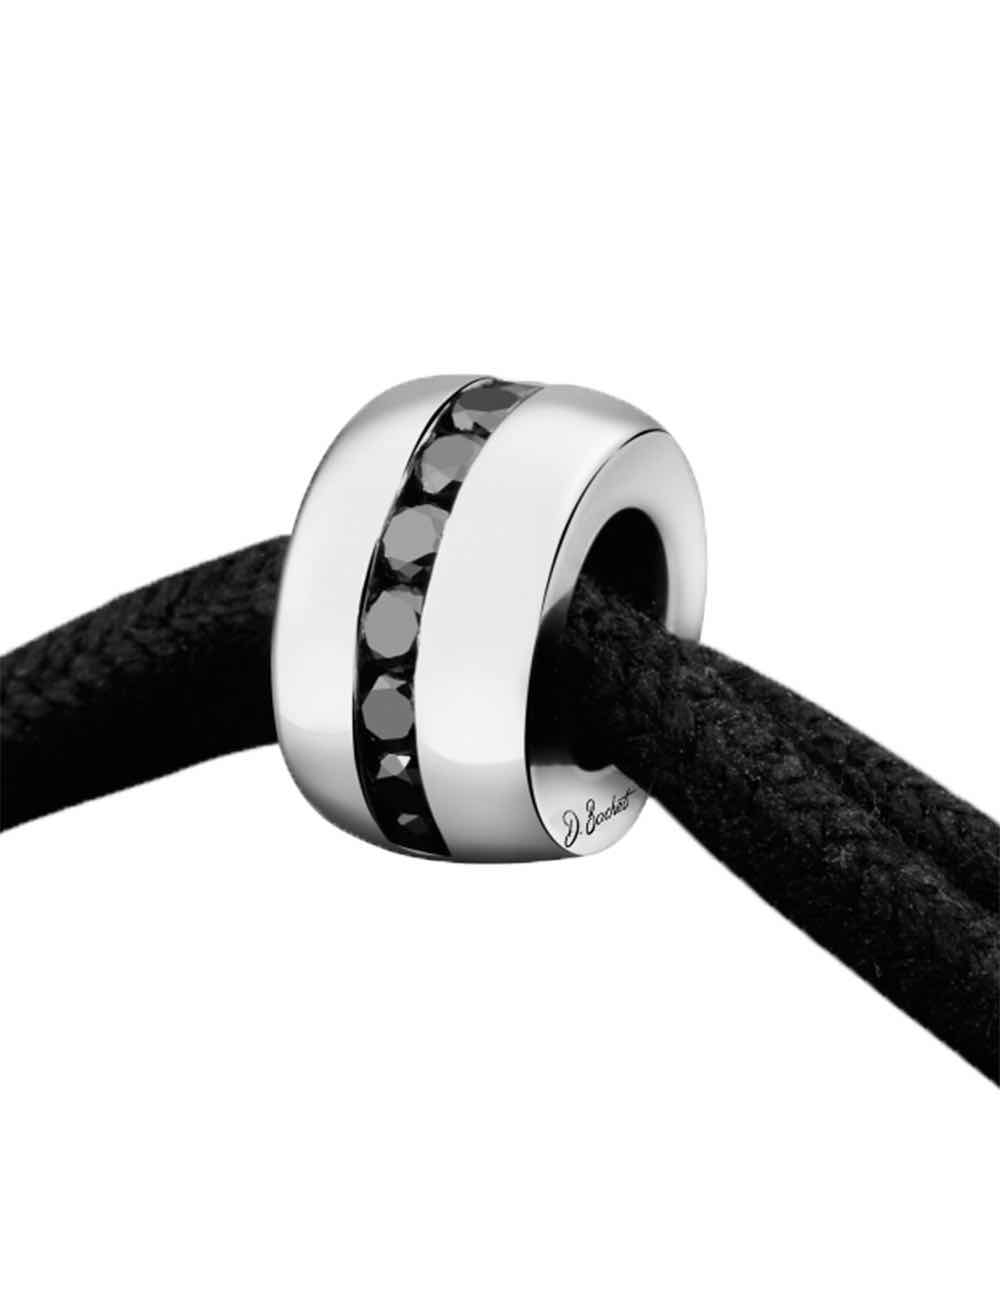 Bracelet homme en or blanc et diamants noirs avec noeuds coulissants à porter tous les jours